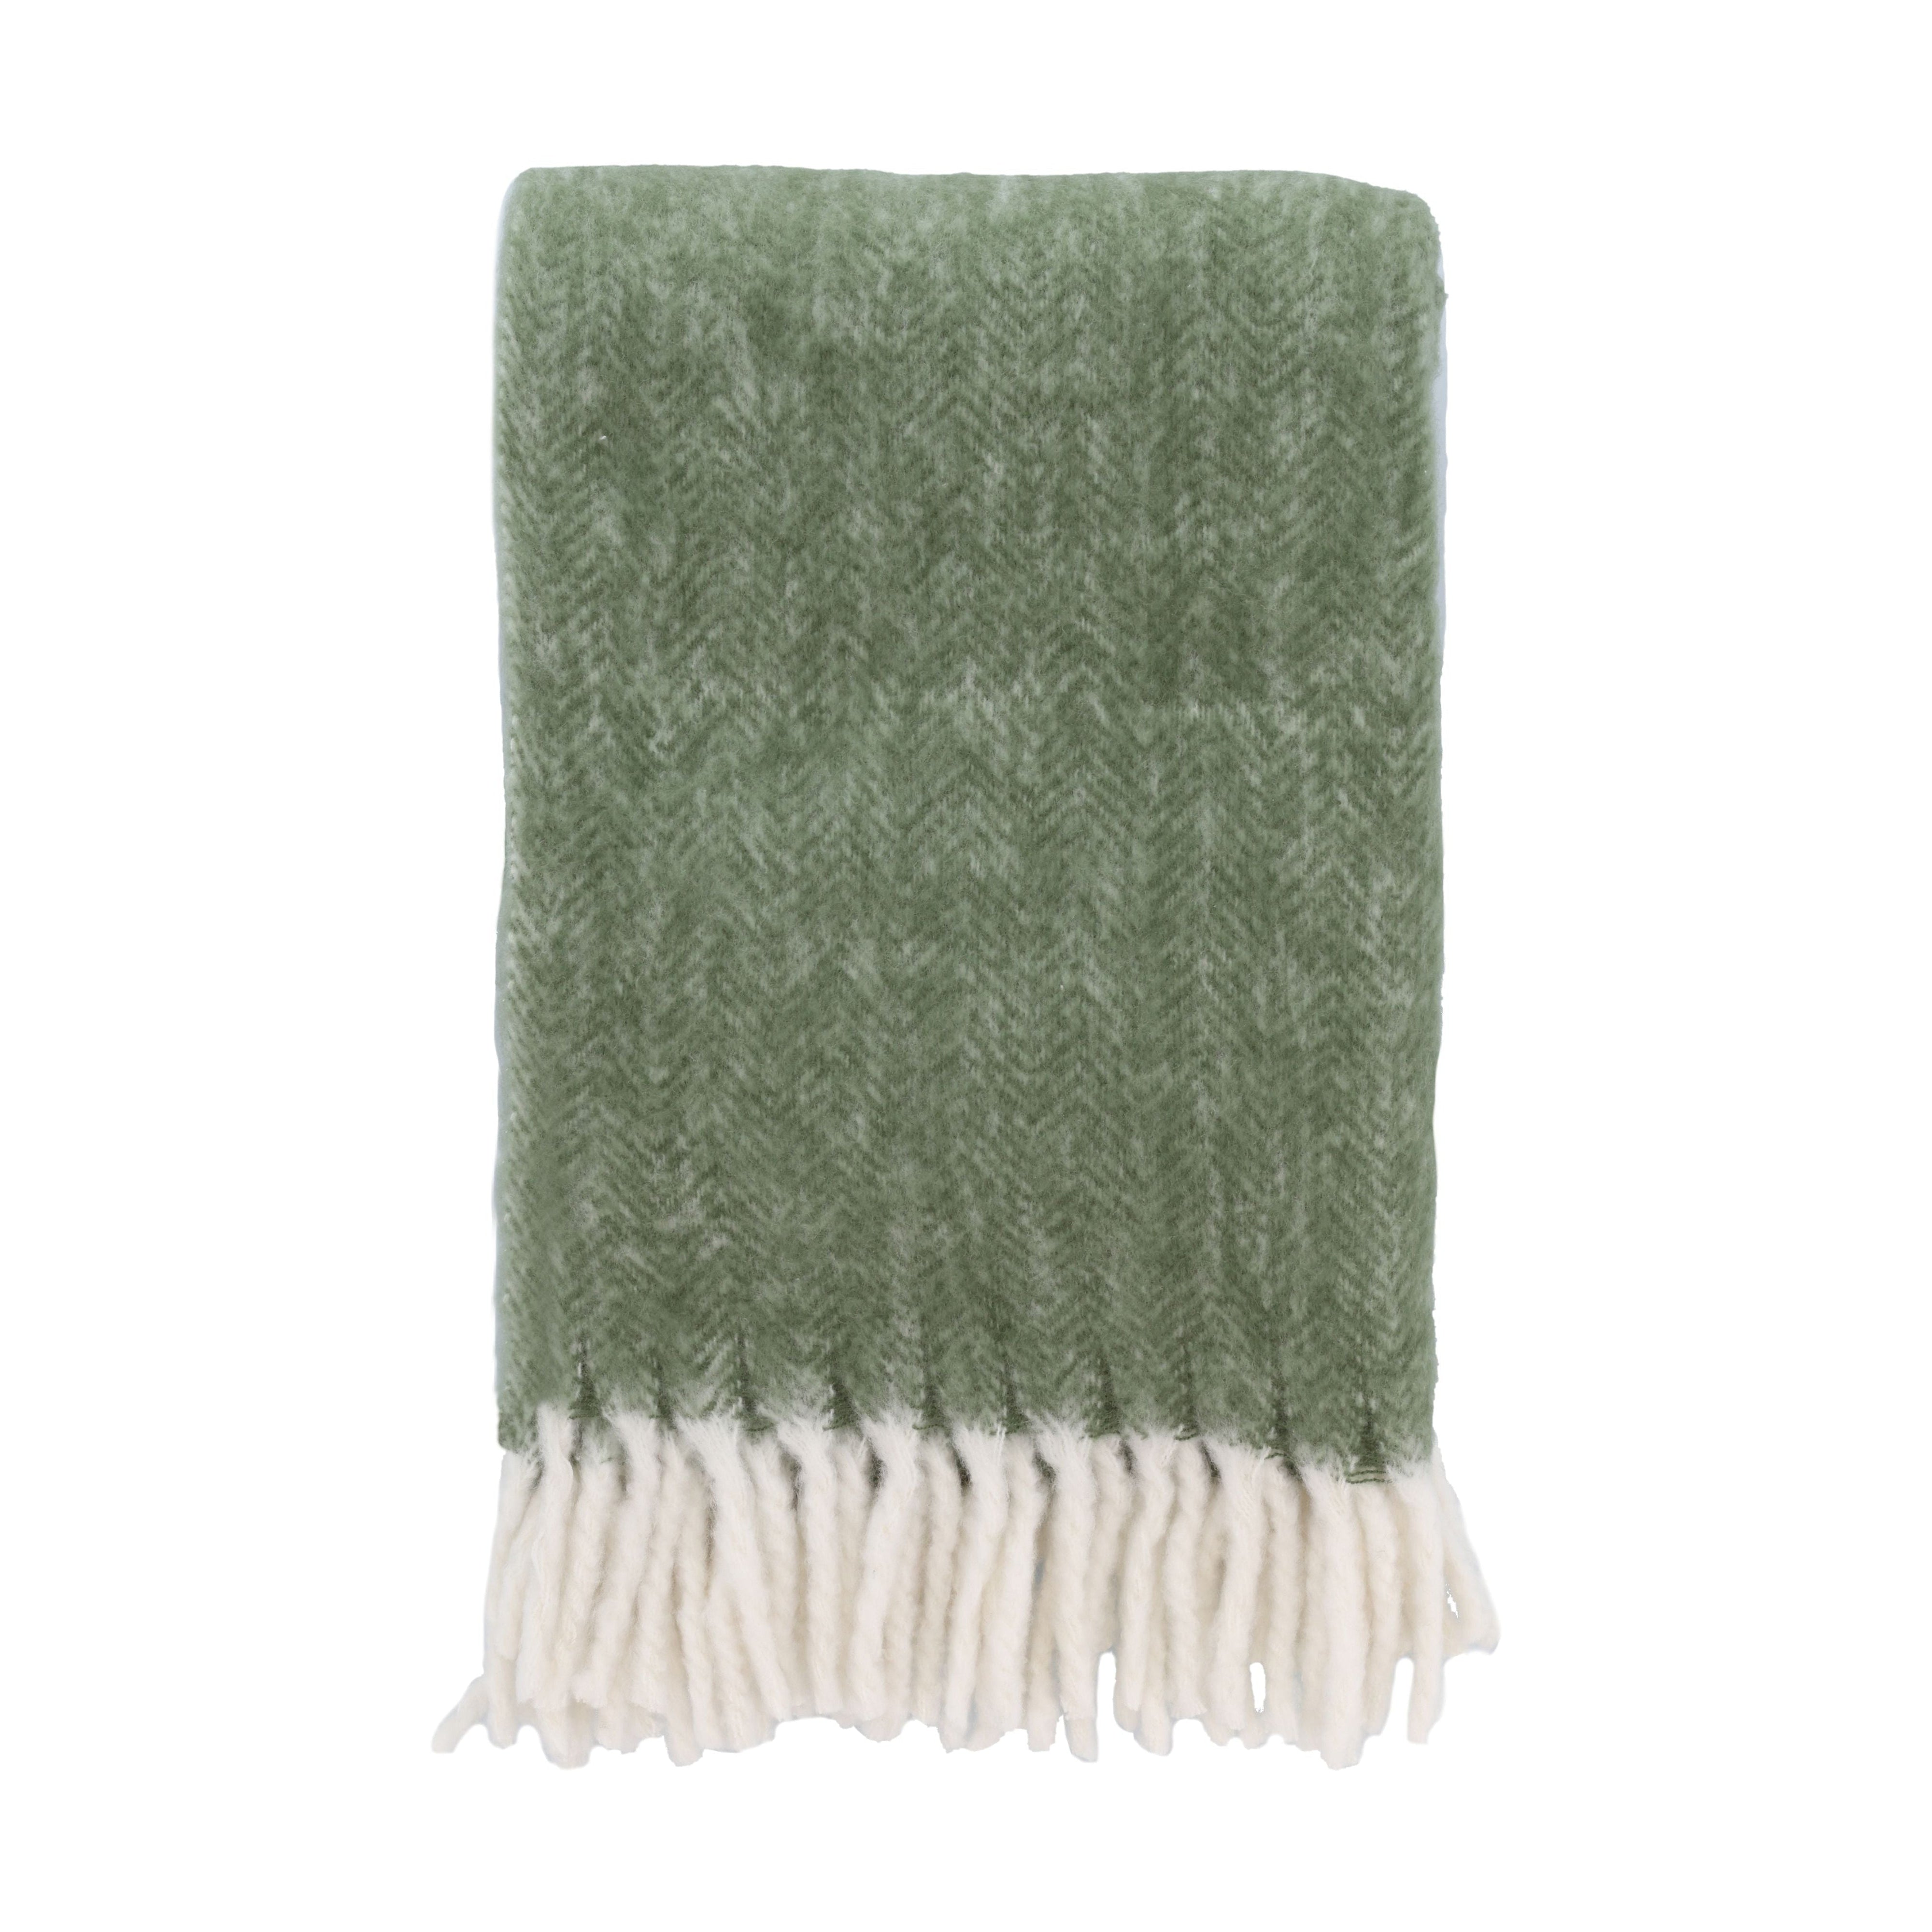 Södahl Brushed Blanket 150x200 Cm, Olive